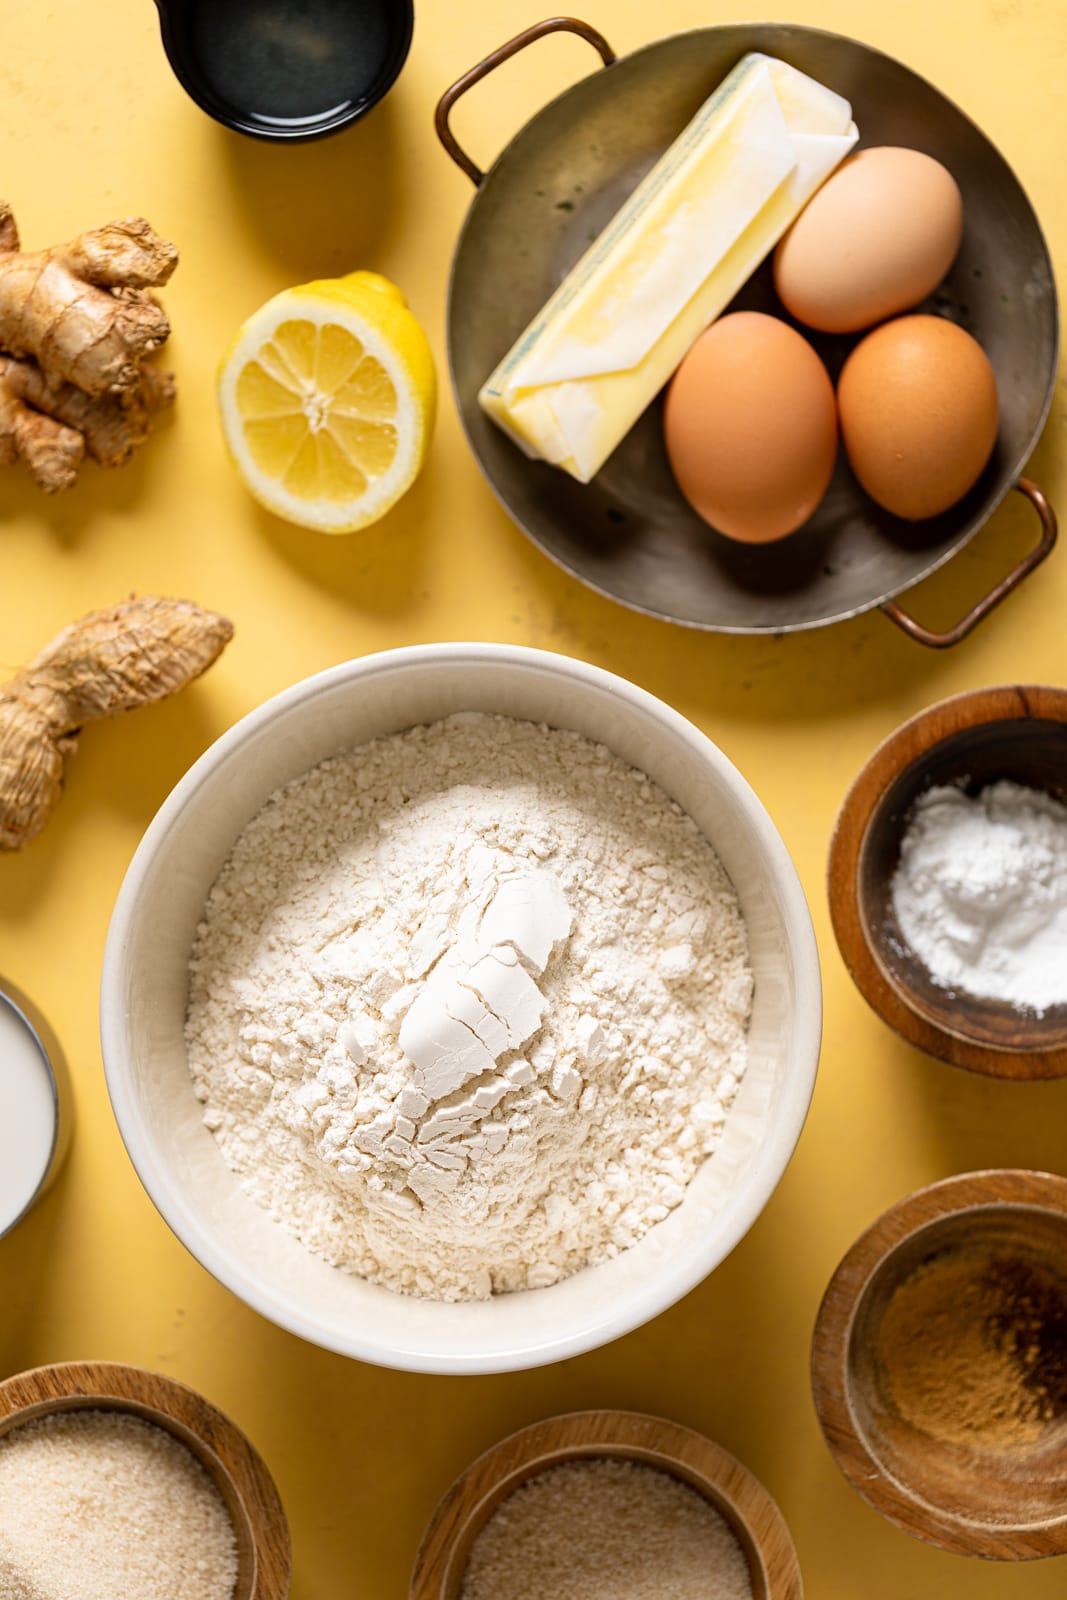 Ingredients for Lemon Ginger Bundt Cake including eggs, ginger, and flour